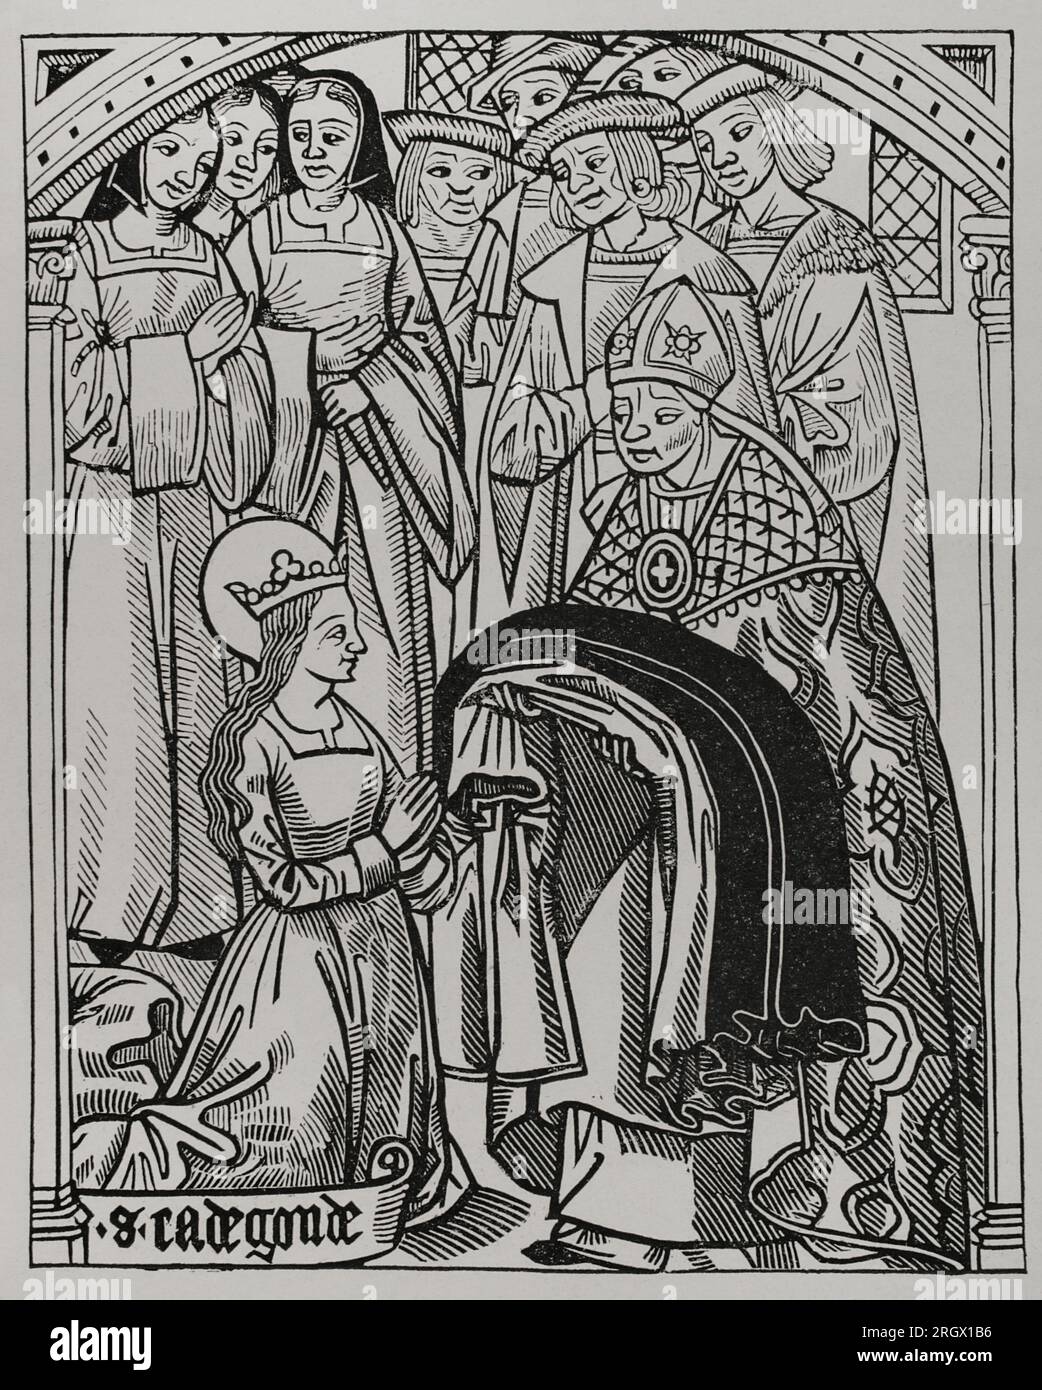 St. Radegund (ca. 520-587). Prinzessin von Thüringen und Königin der Franken durch ihre Heirat mit Clothar I. (498-561). Radegund erhielt die Gewohnheit und wurde von Medard (456-545), Bischof von Noyon, als sie ihren Ehemann König Clothar verließ, um in das religiöse Leben einzutreten, als sie eine Diakonin geweiht wurde. Fax nach Gravur aus 'Geschichte und Chronik von Clotaire', 1513. "Vie Militaire et Religieuse au Moyen Age et à l'Epoque de la Renaissance". Paris, 1877. Stockfoto